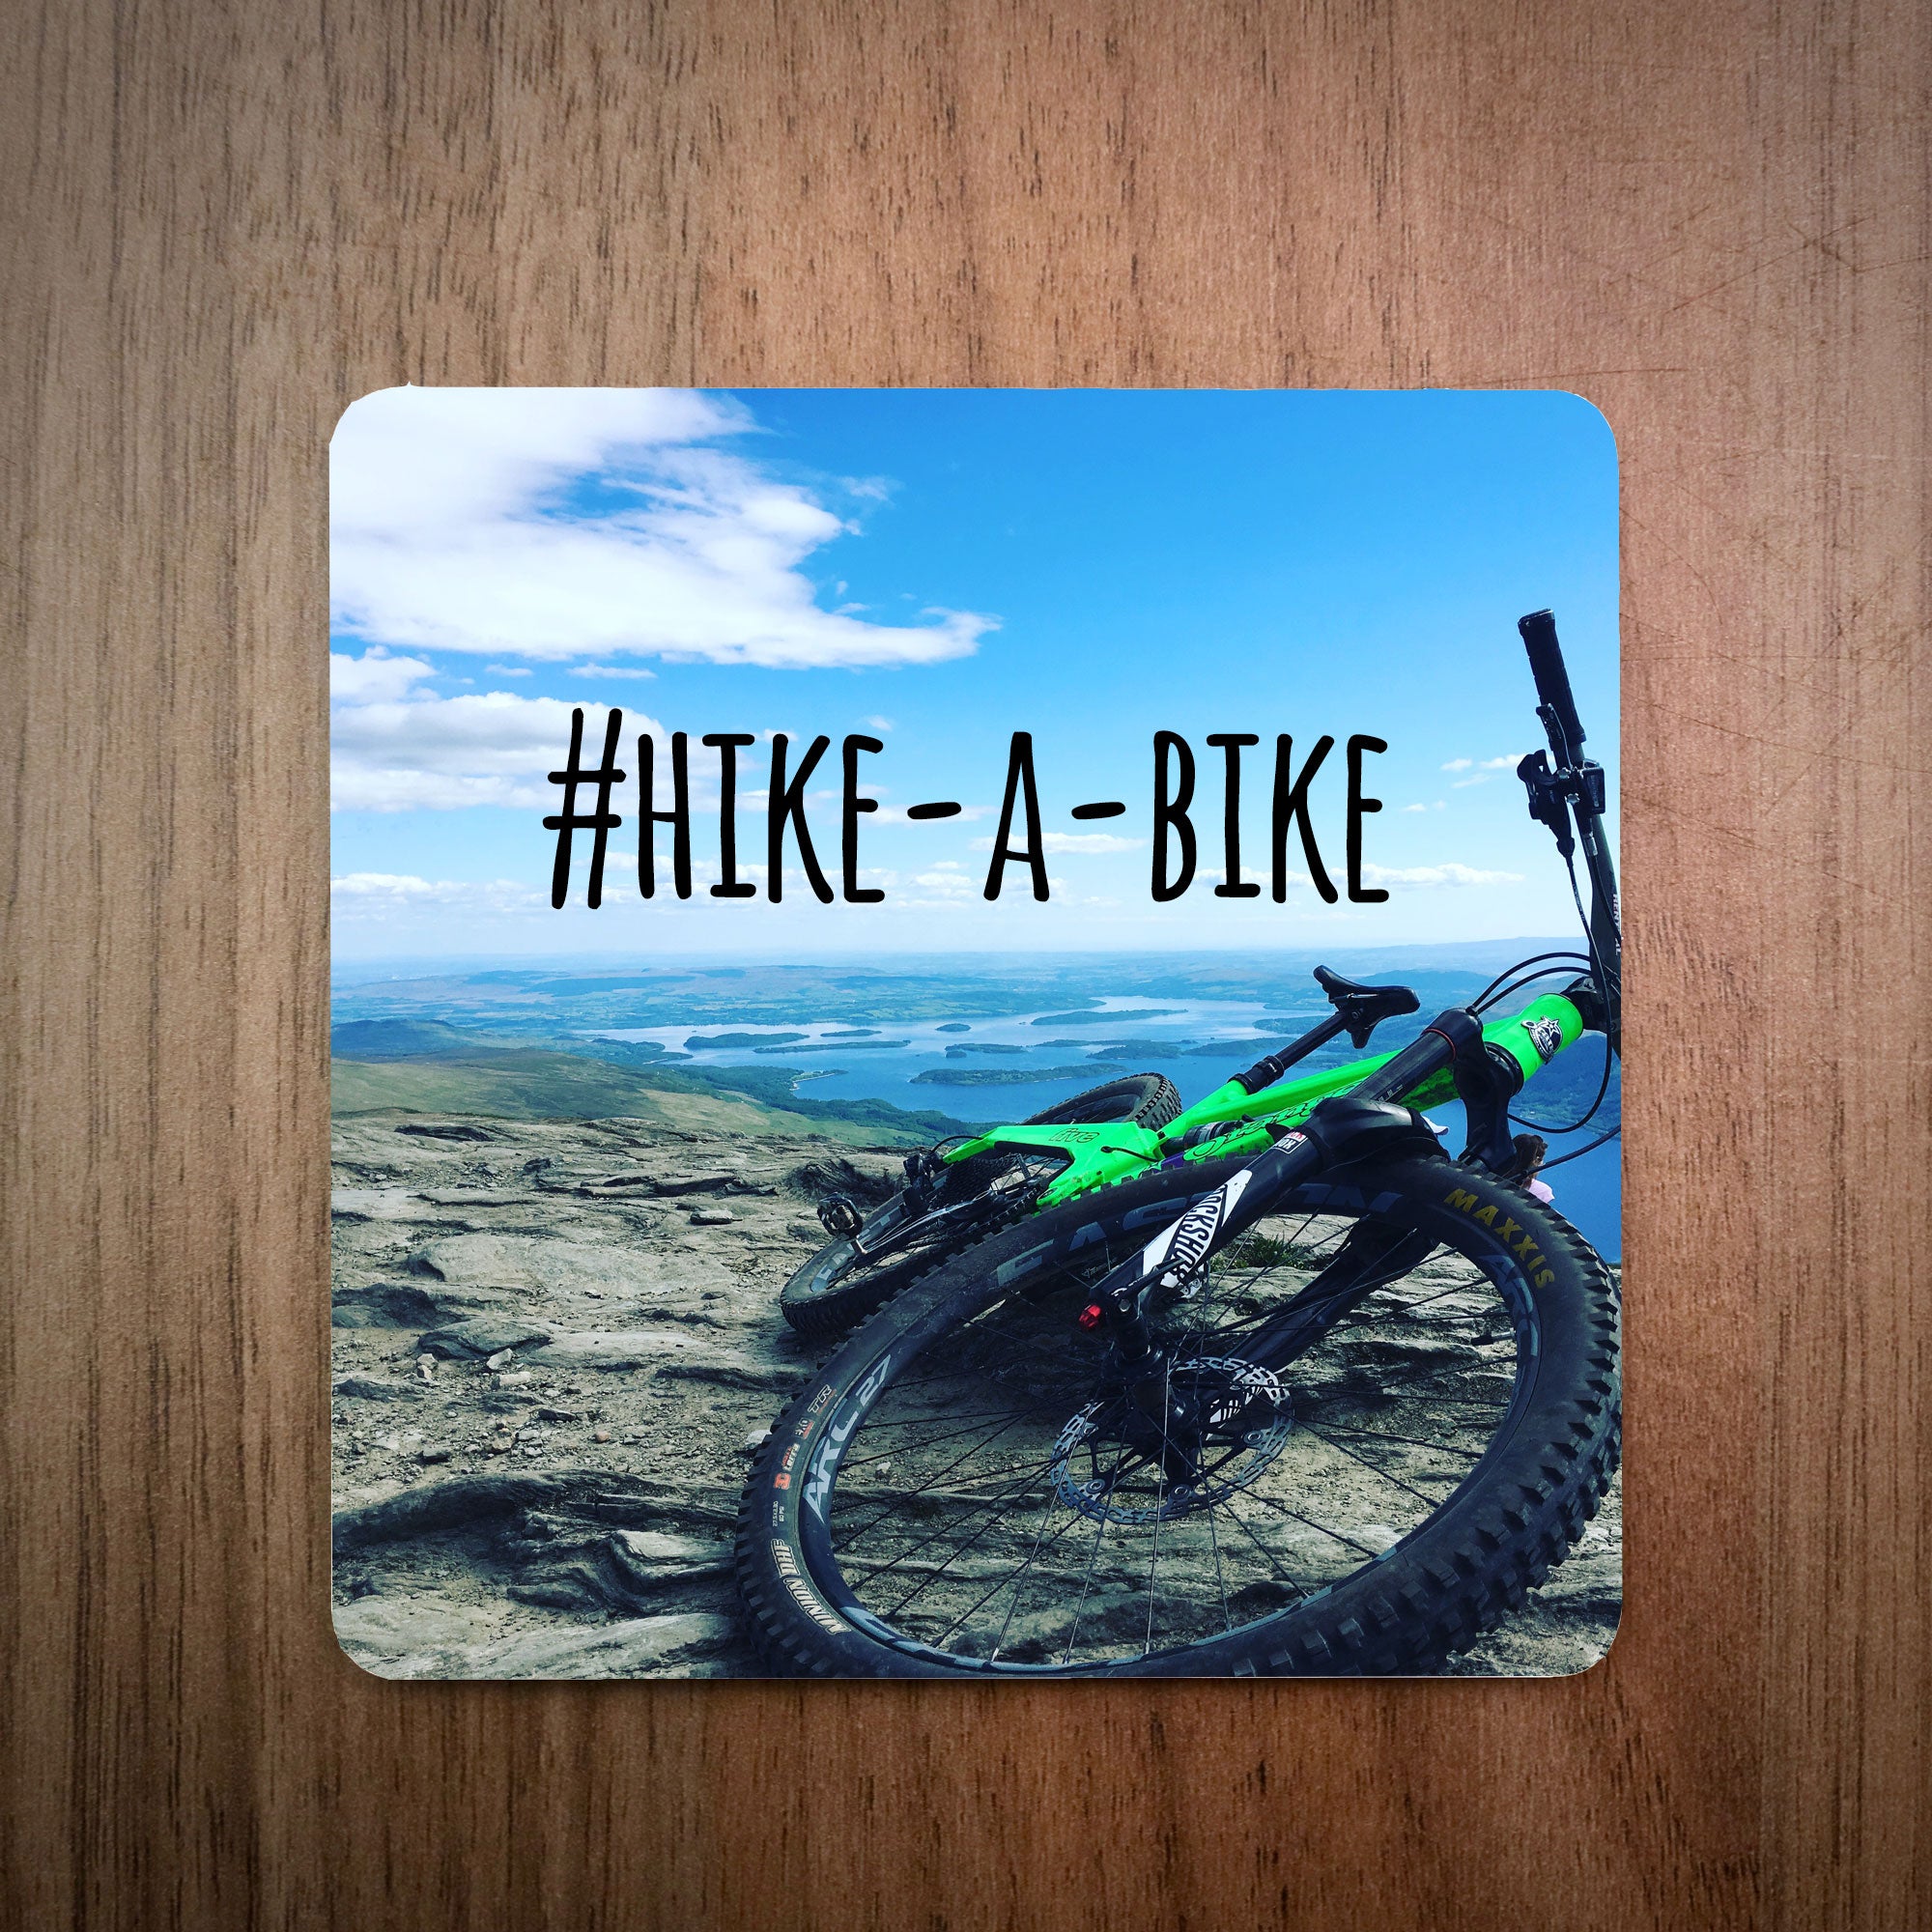 Hike-A-Bike MTB Photo Bike Coaster